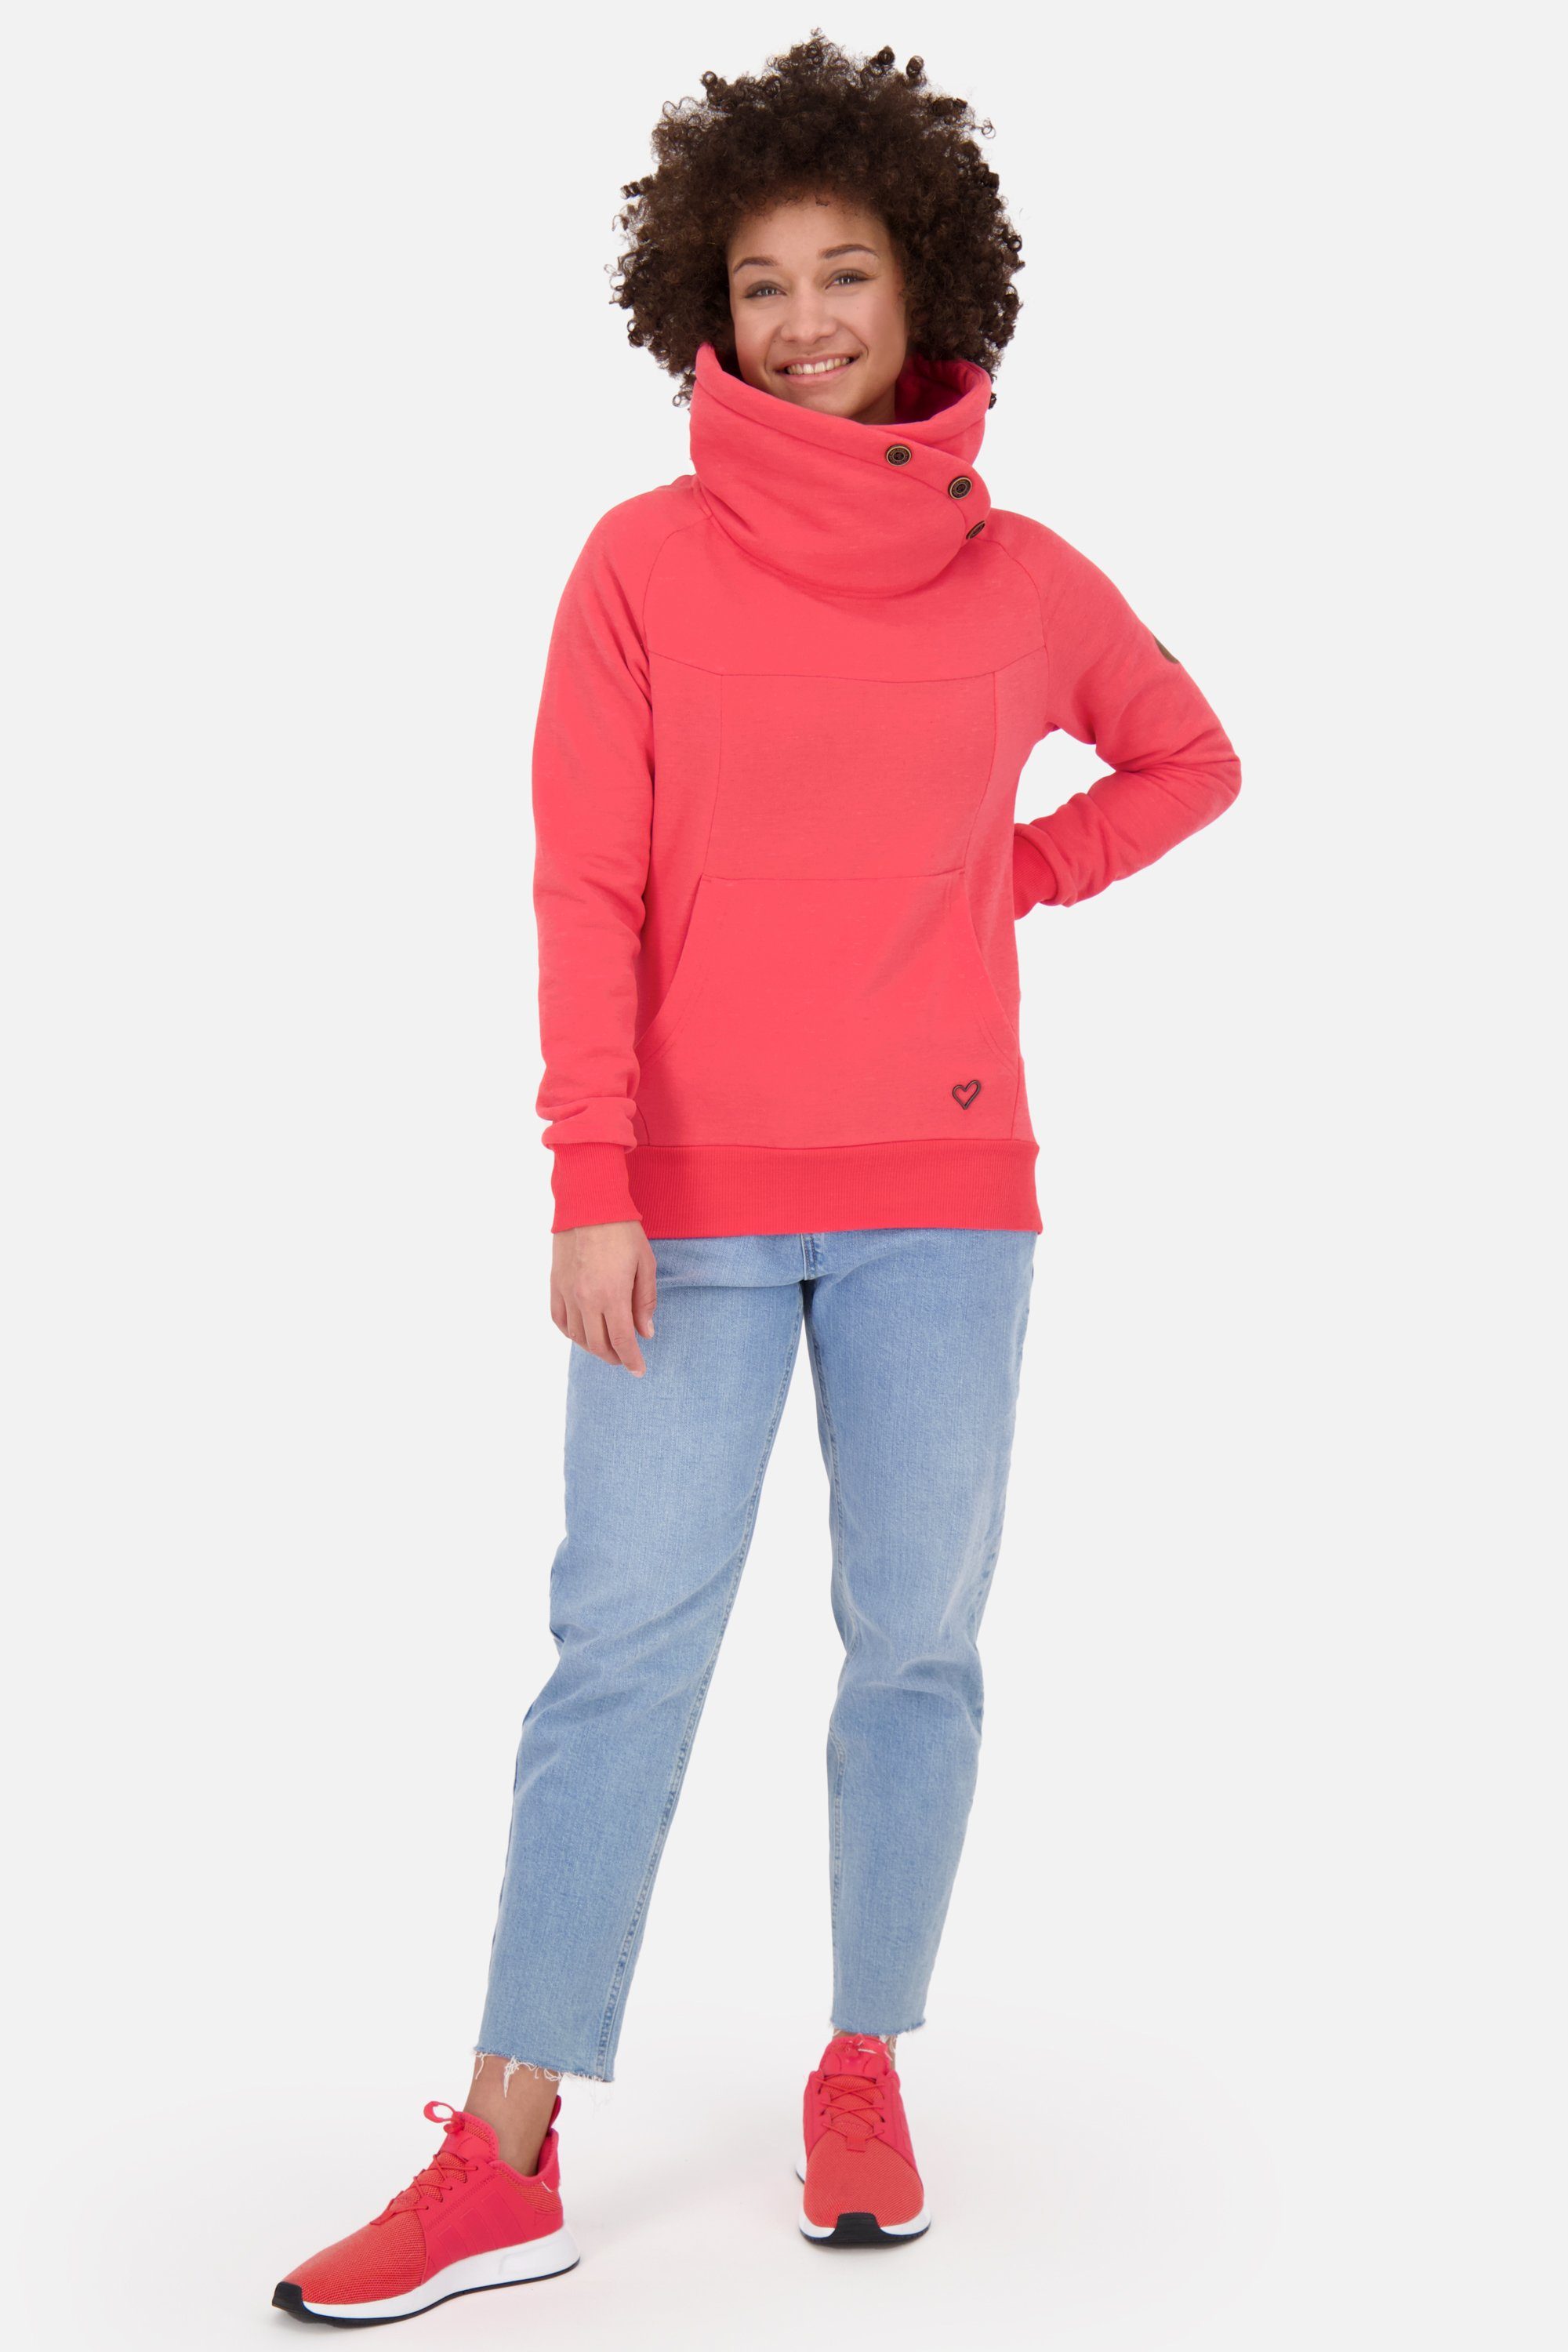 & Alife Pullover coral Sweatshirt melange VioletAK Damen A Sweatshirt Rundhalspullover, Kickin